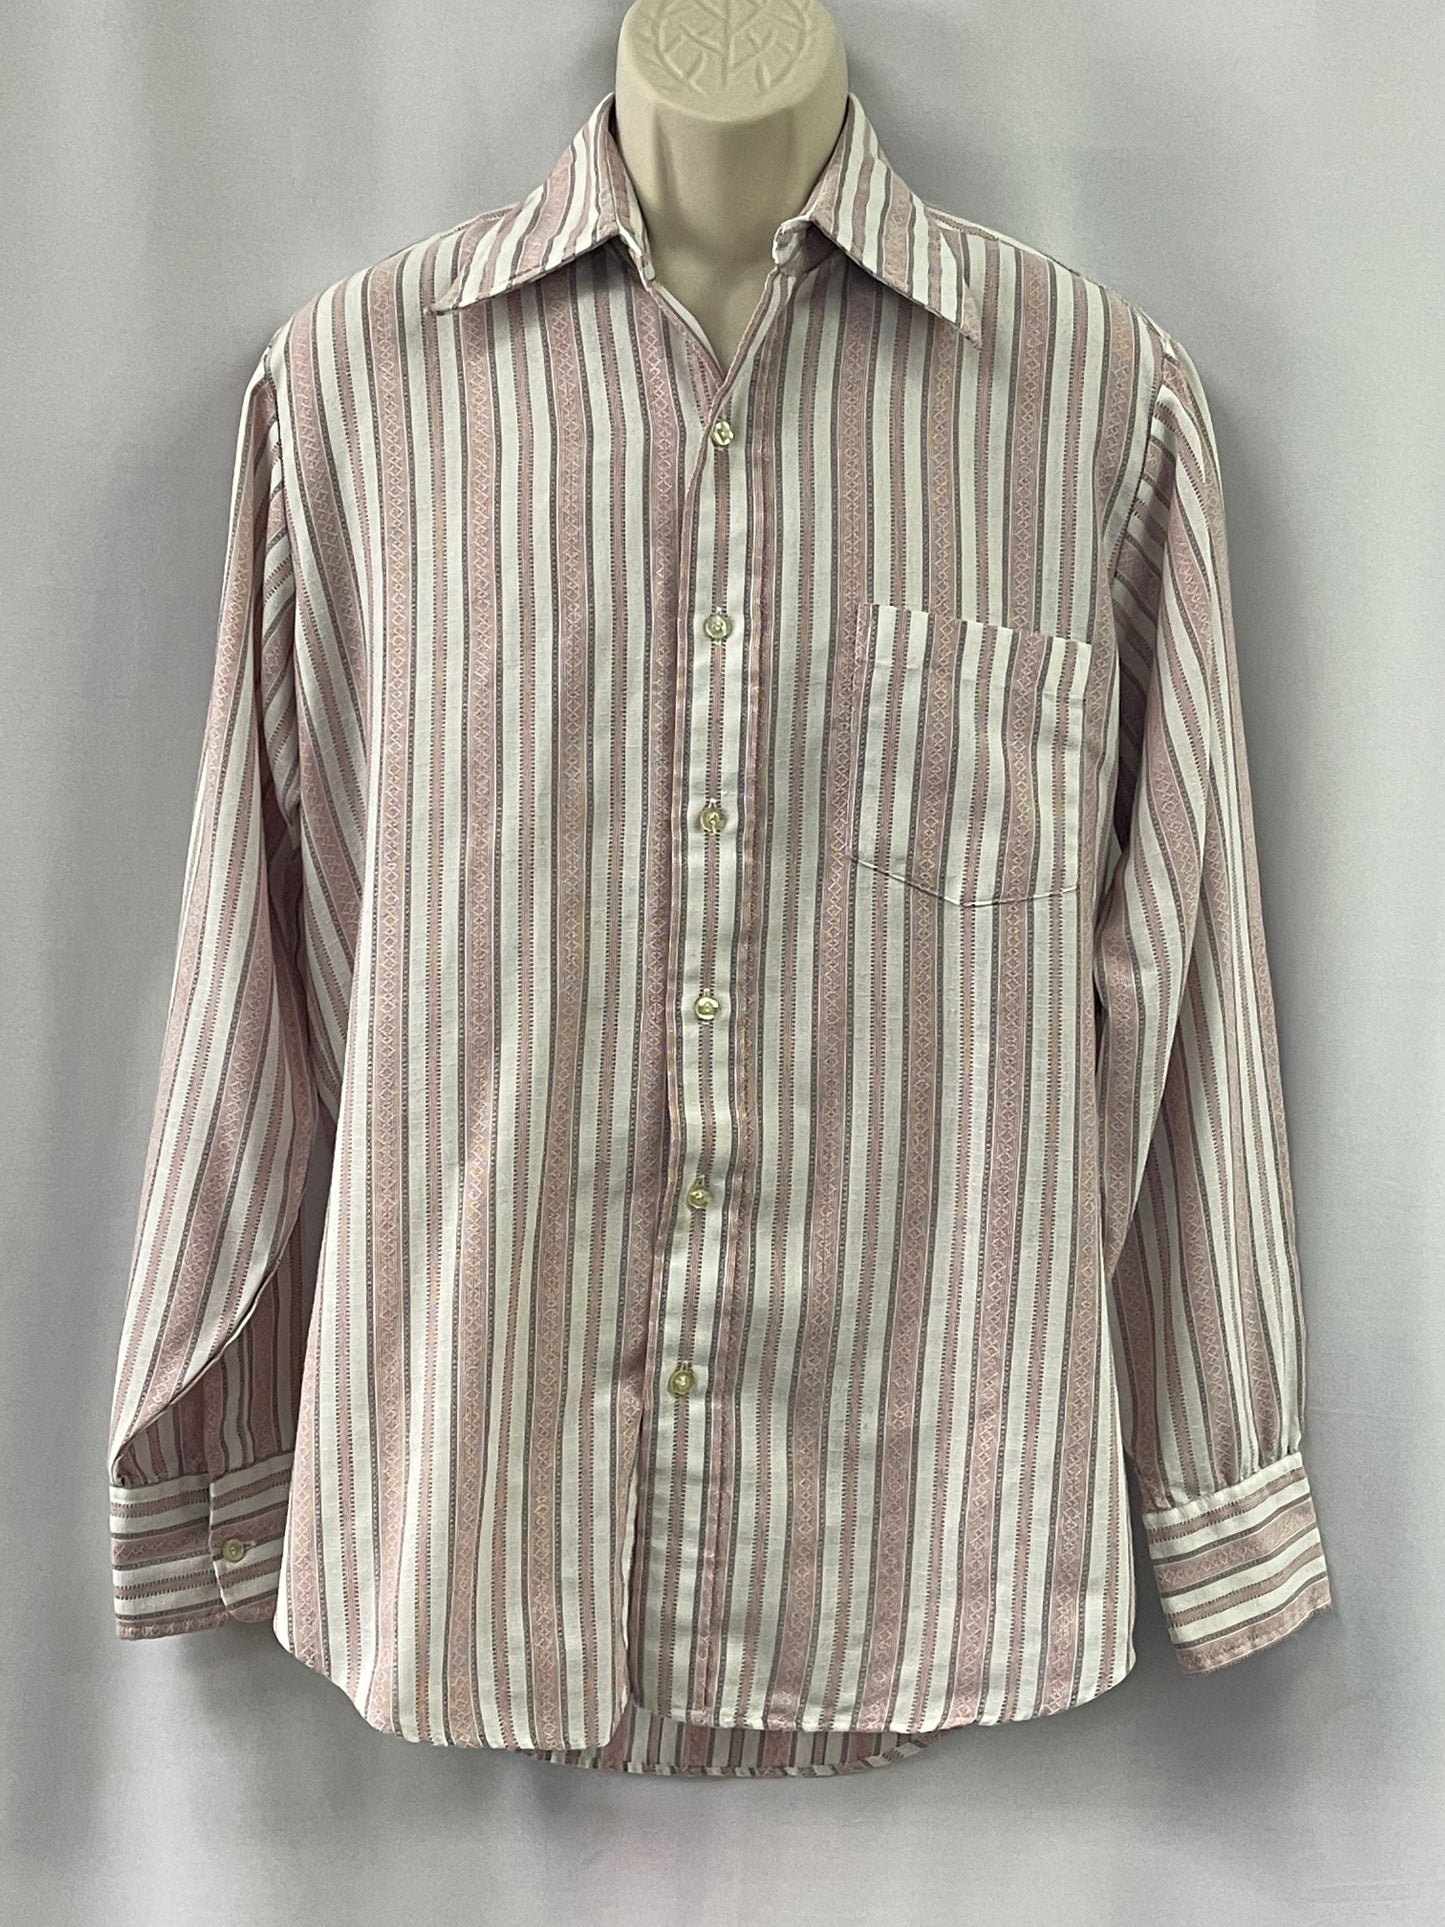 70s T.A. Chapman Co Shirt